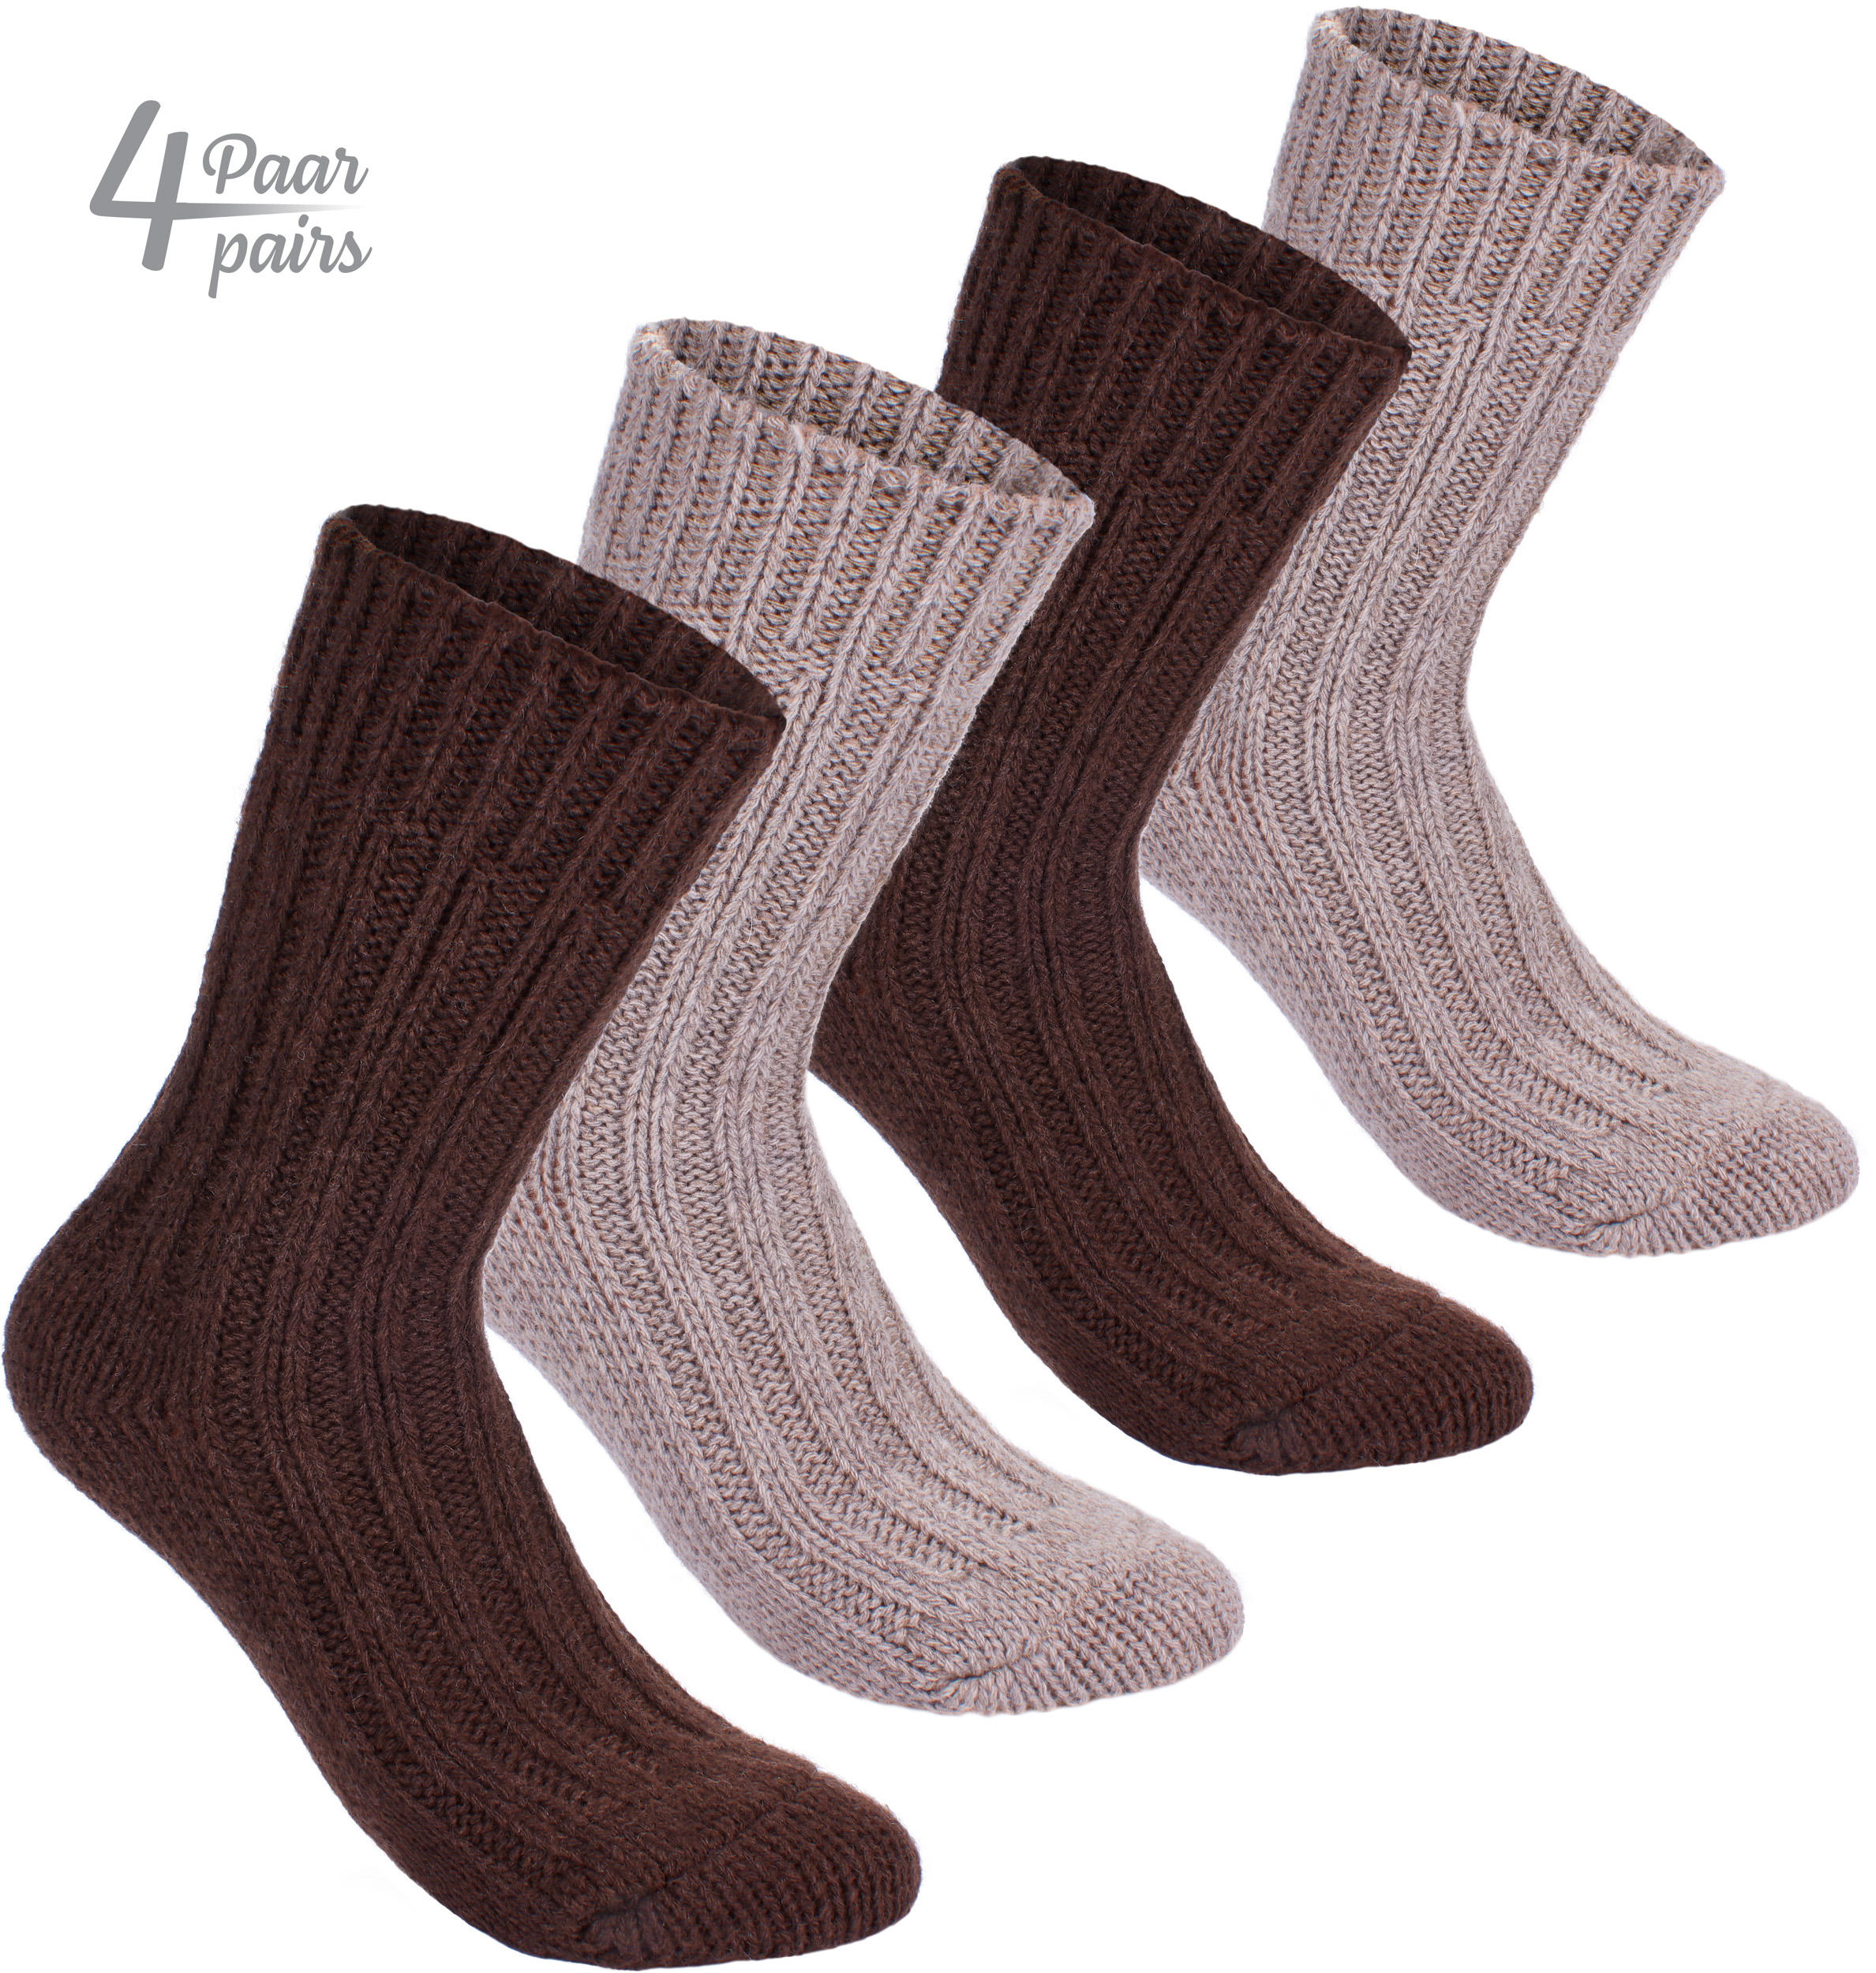 Brubaker 4 Paar Sokken van Alpacawol – Bruin